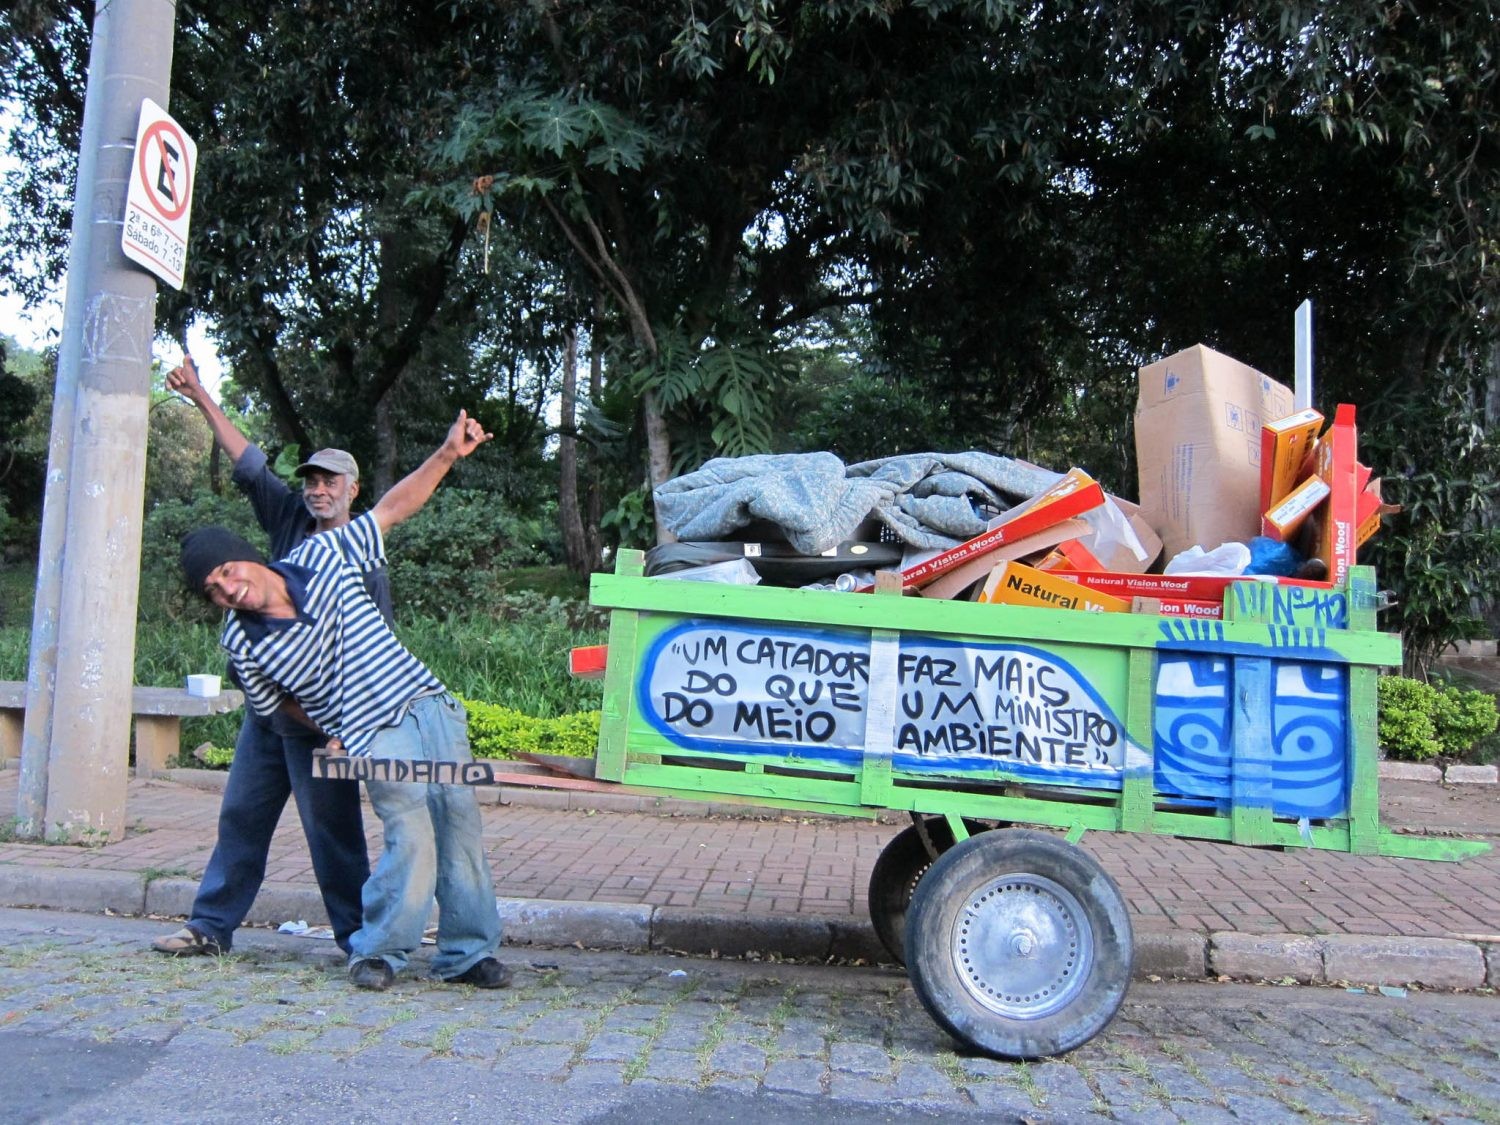 O Cataki faz parte do Pimp My Carroça, projeto social que, entre muitas coisas, reforma carroças de moradores (Foto: Divulgação / Pimp My Carroça)